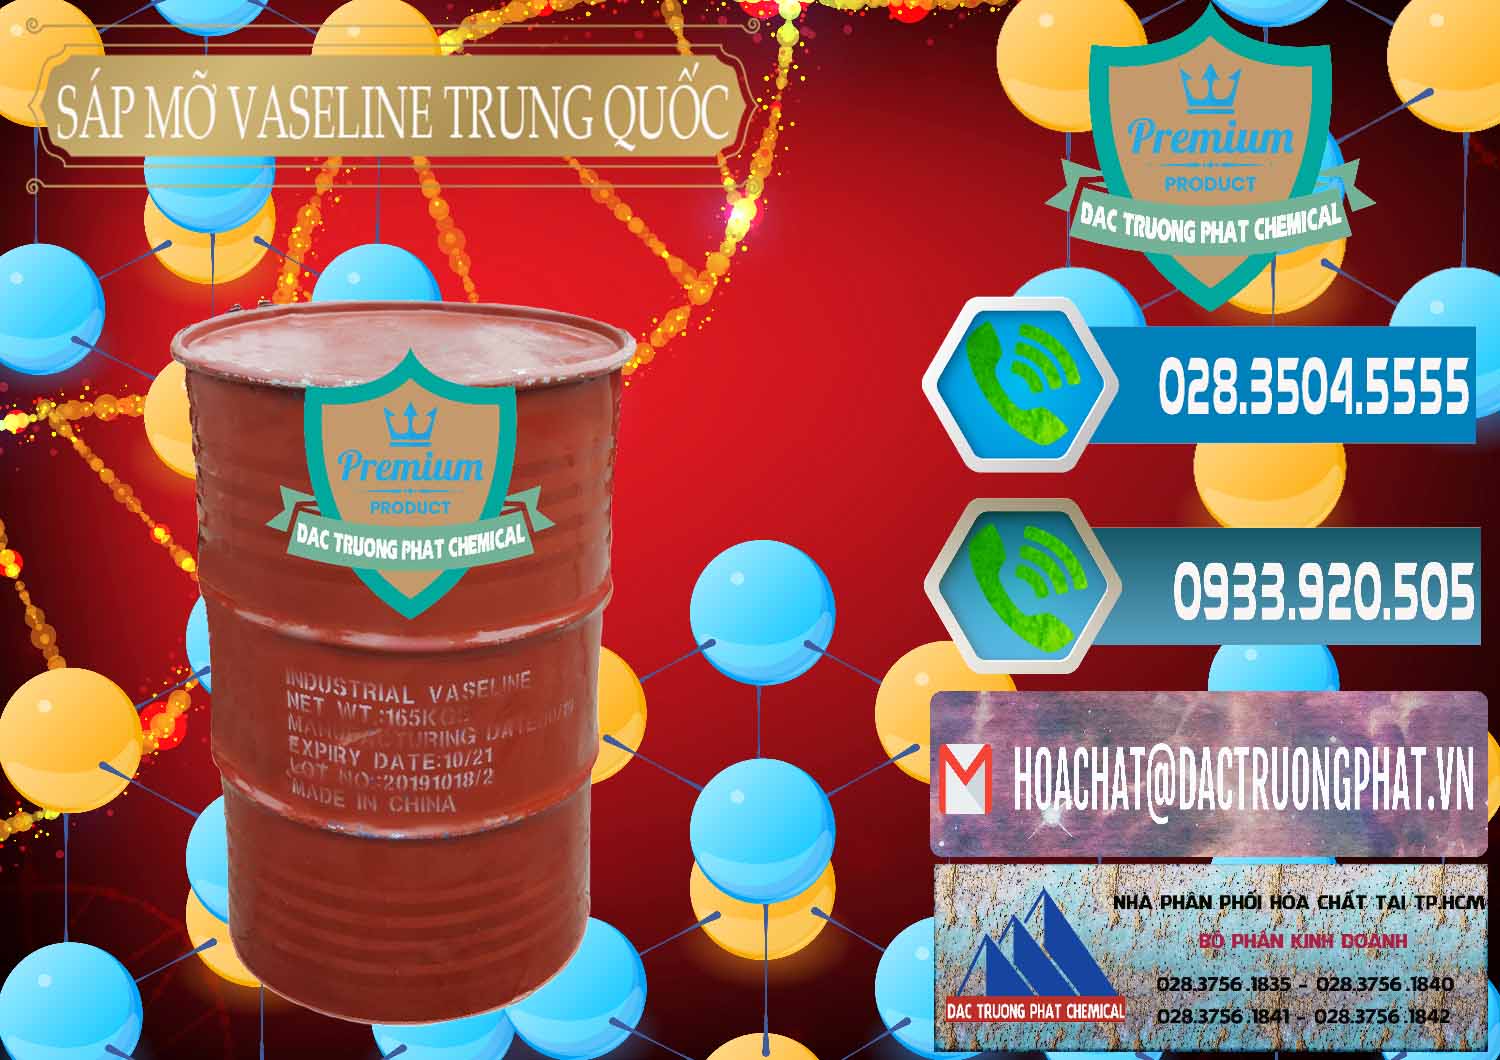 Cty chuyên kinh doanh & bán Sáp Mỡ Vaseline Trung Quốc China - 0122 - Đơn vị cung ứng & phân phối hóa chất tại TP.HCM - congtyhoachat.net